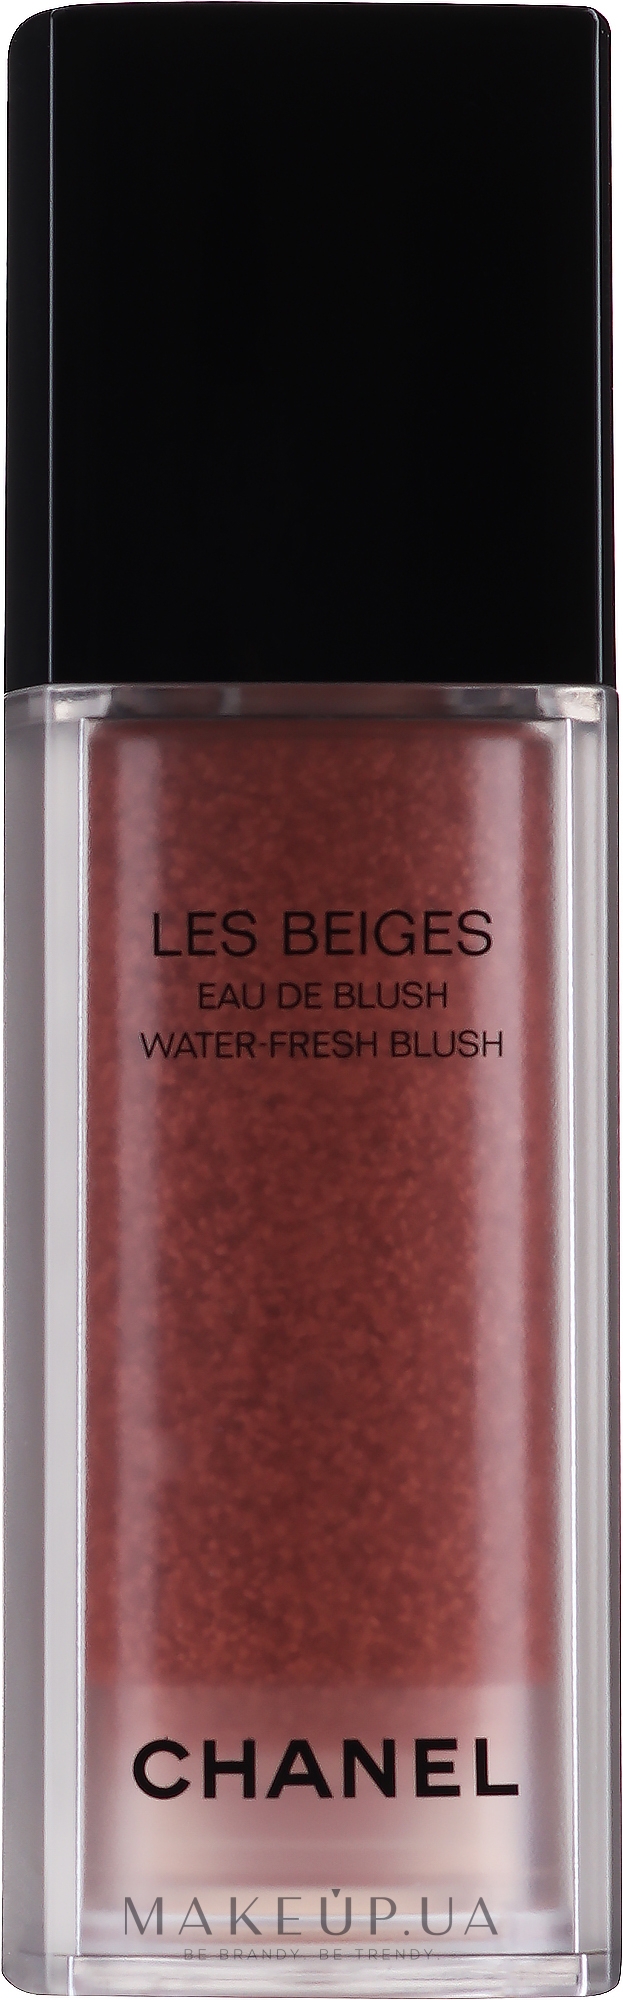 Румяна - Chanel Les Beiges Eau De Blush Water-Fresh Blush — фото Intense Coral